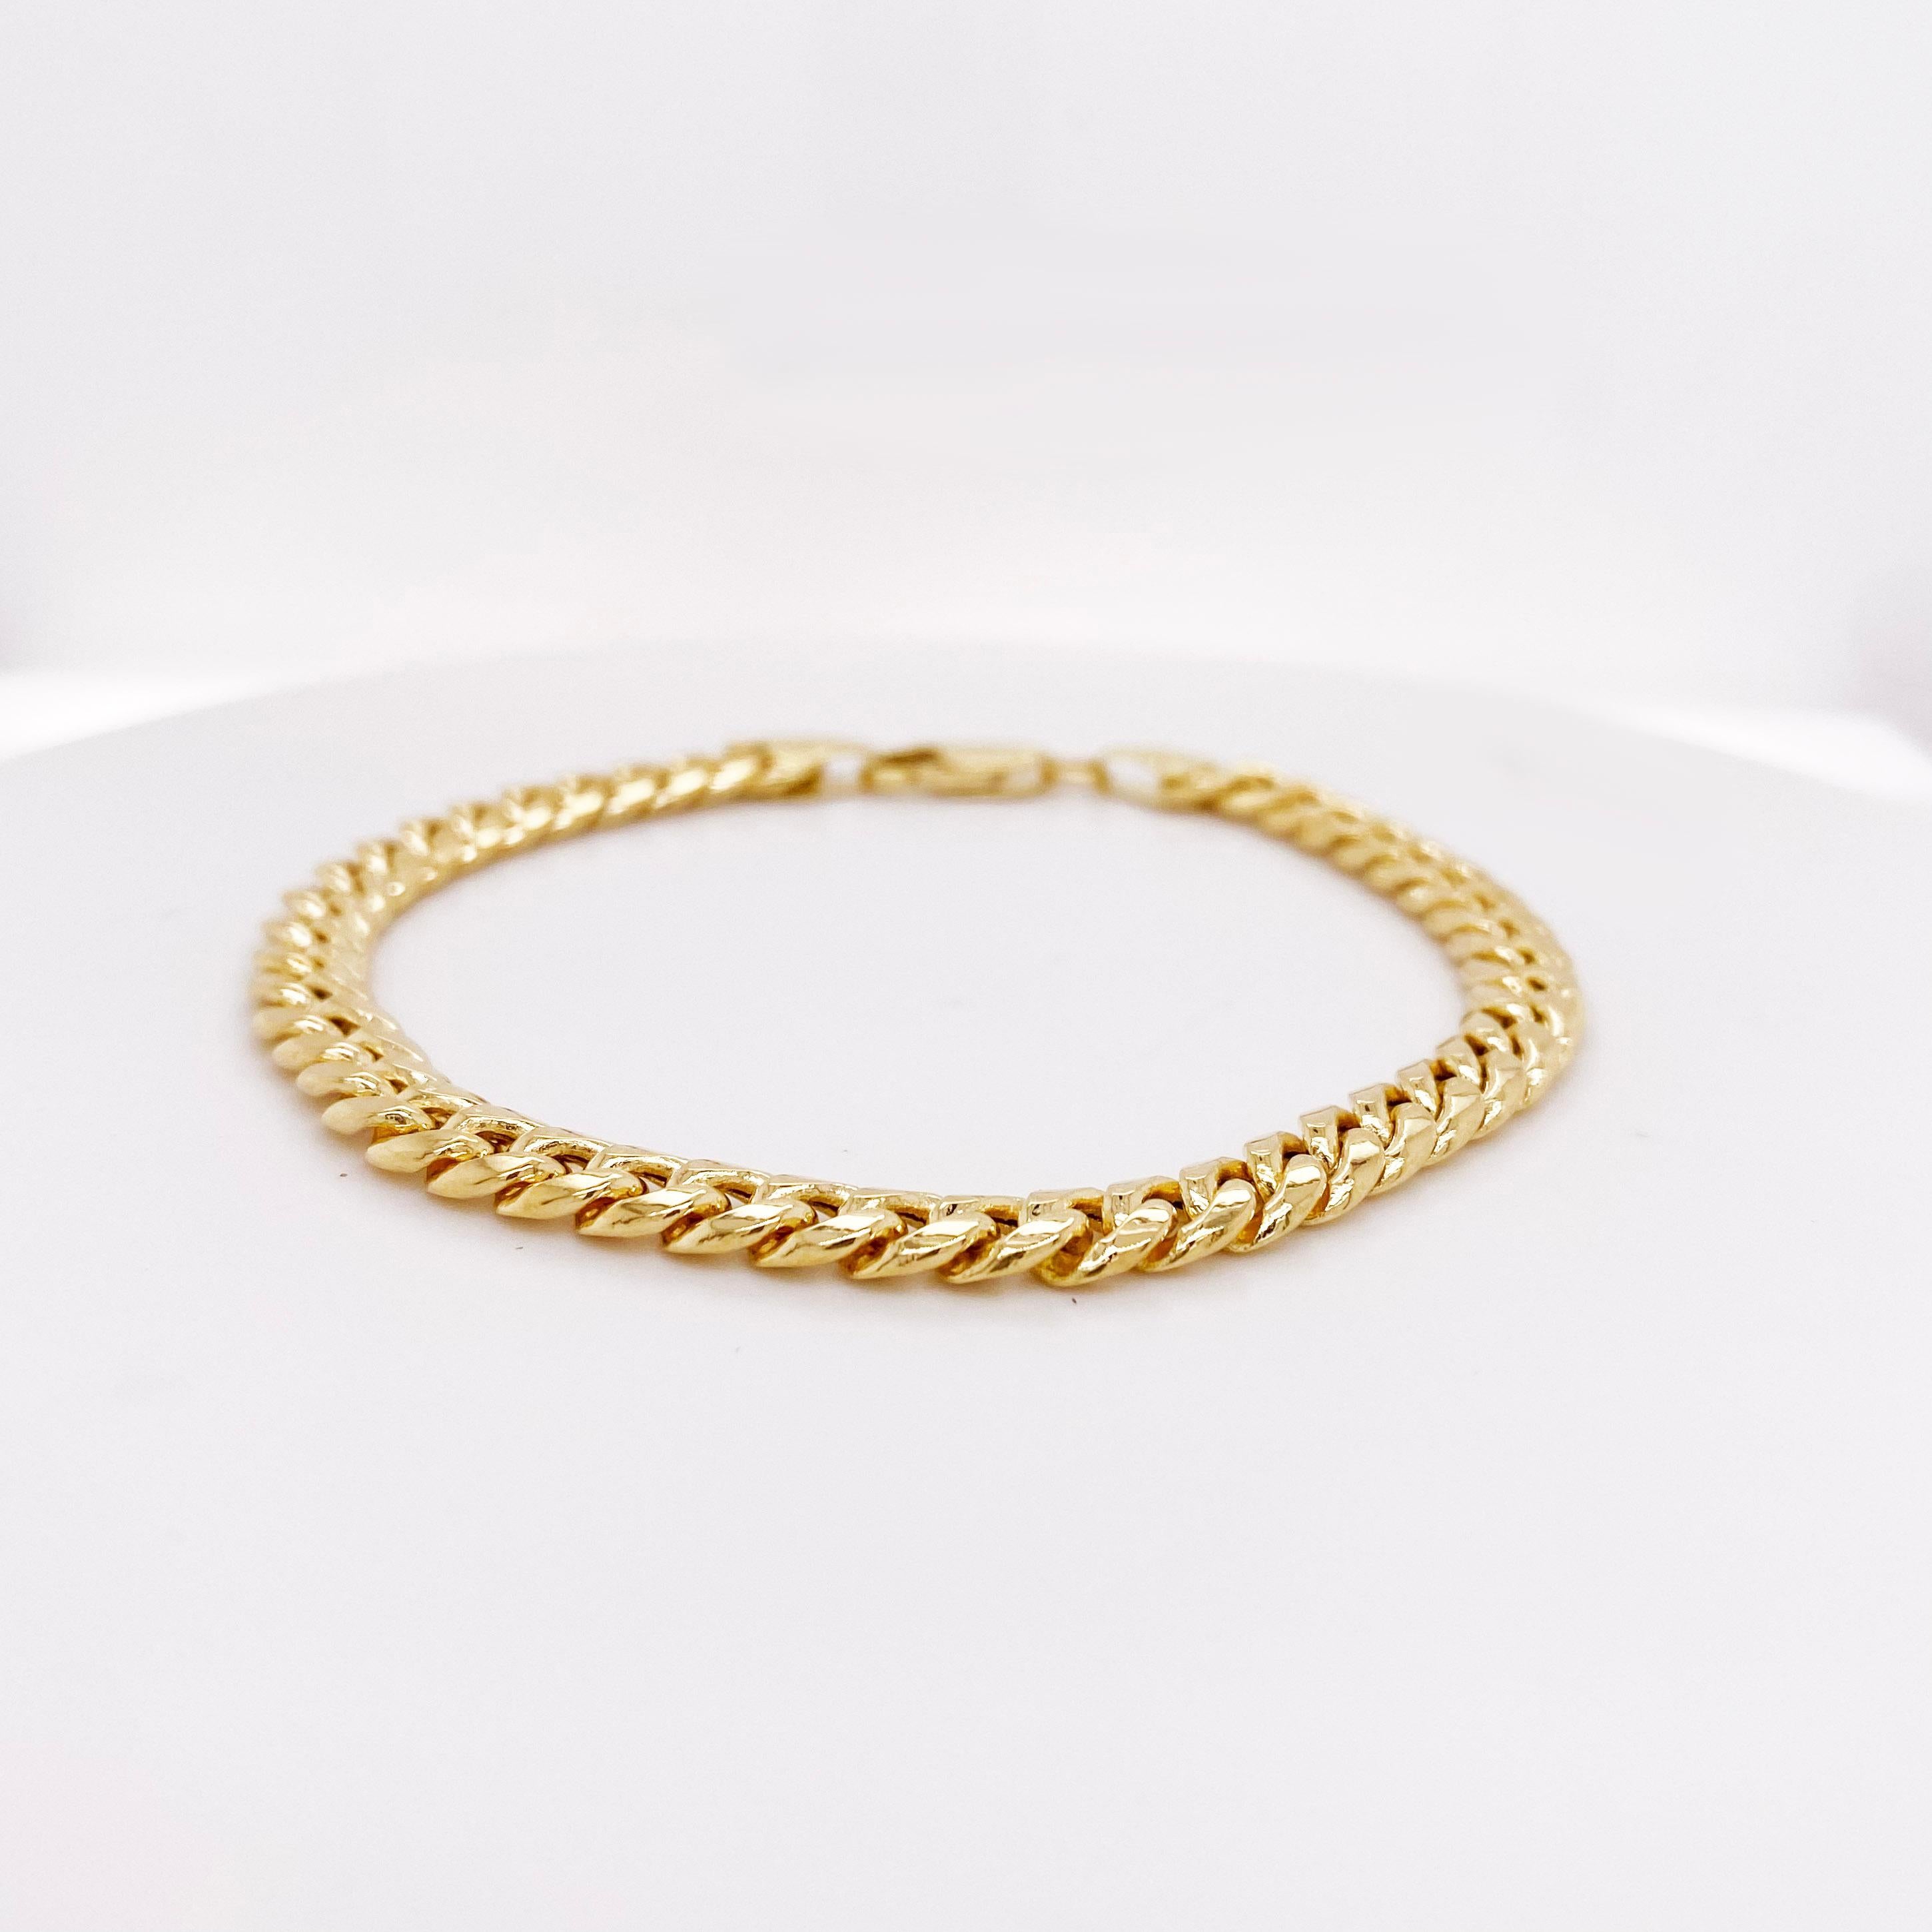 Bracelet en chaîne cubaine de Miami en or jaune 14k. Ce bracelet est la chaîne la plus tendance du moment ! Les bijoux en or Bigli sont de retour et plus beaux que jamais ! Ajoutez cette chaîne à votre collection de bijoux fins comme pièce